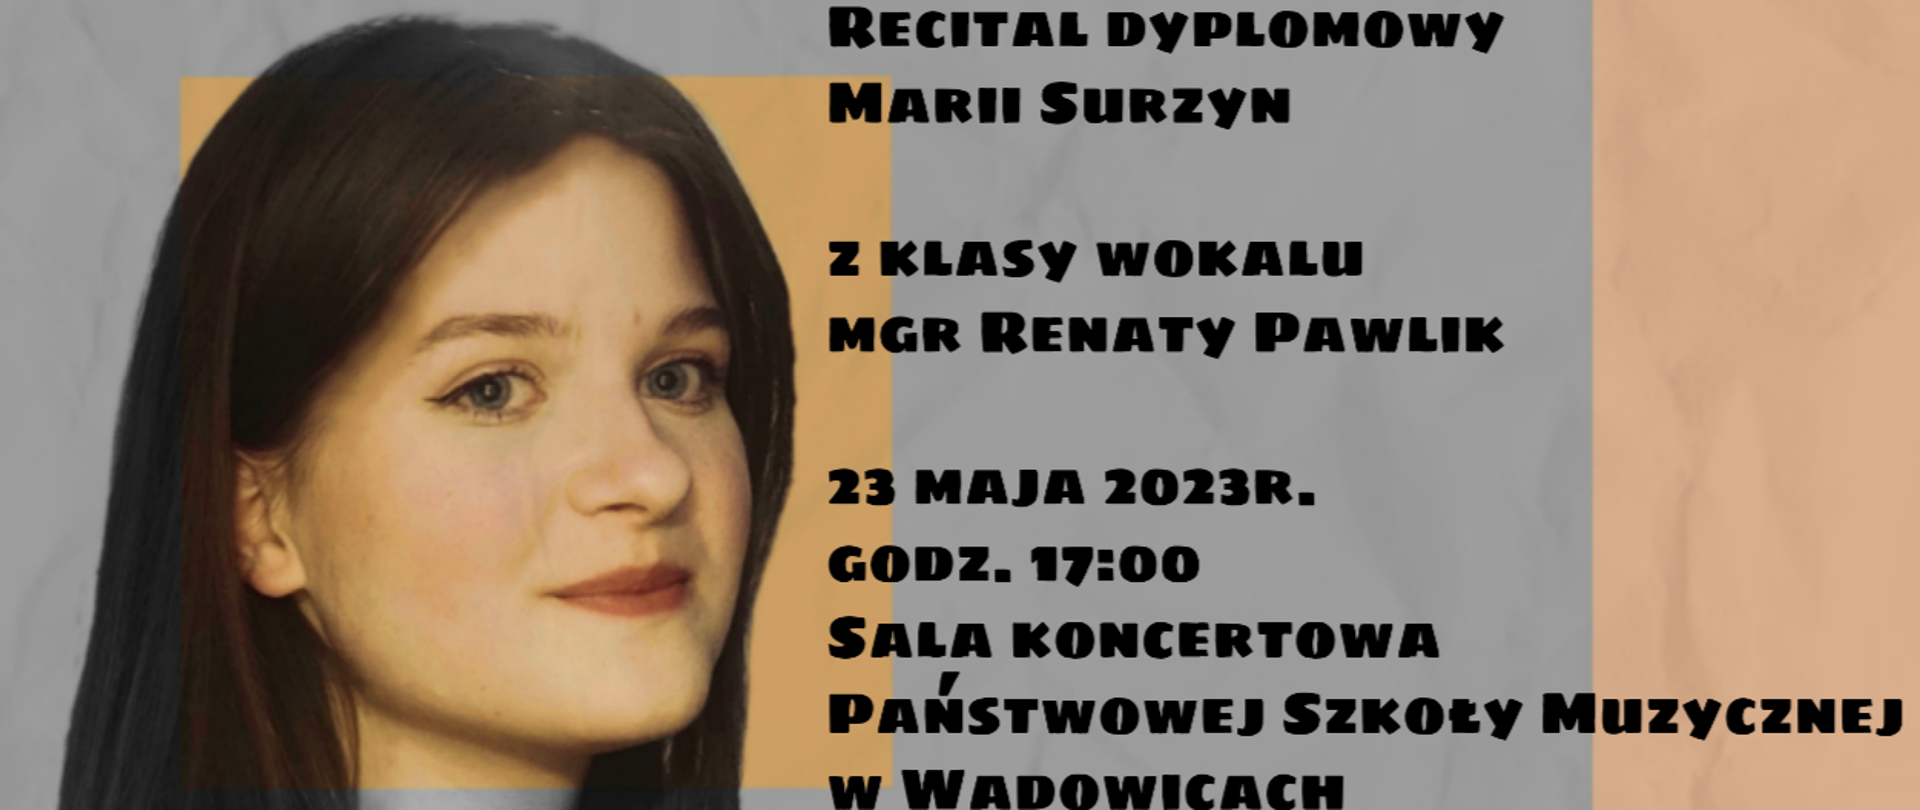 Recital Dyplomowy Marii Surzyn z klasy wokalnej mgr Renaty Pawlik, który odbędzie się w dniu 23.05.2023 o godzinie 17:00. Przy fortepianie mgr NengYi Chen.